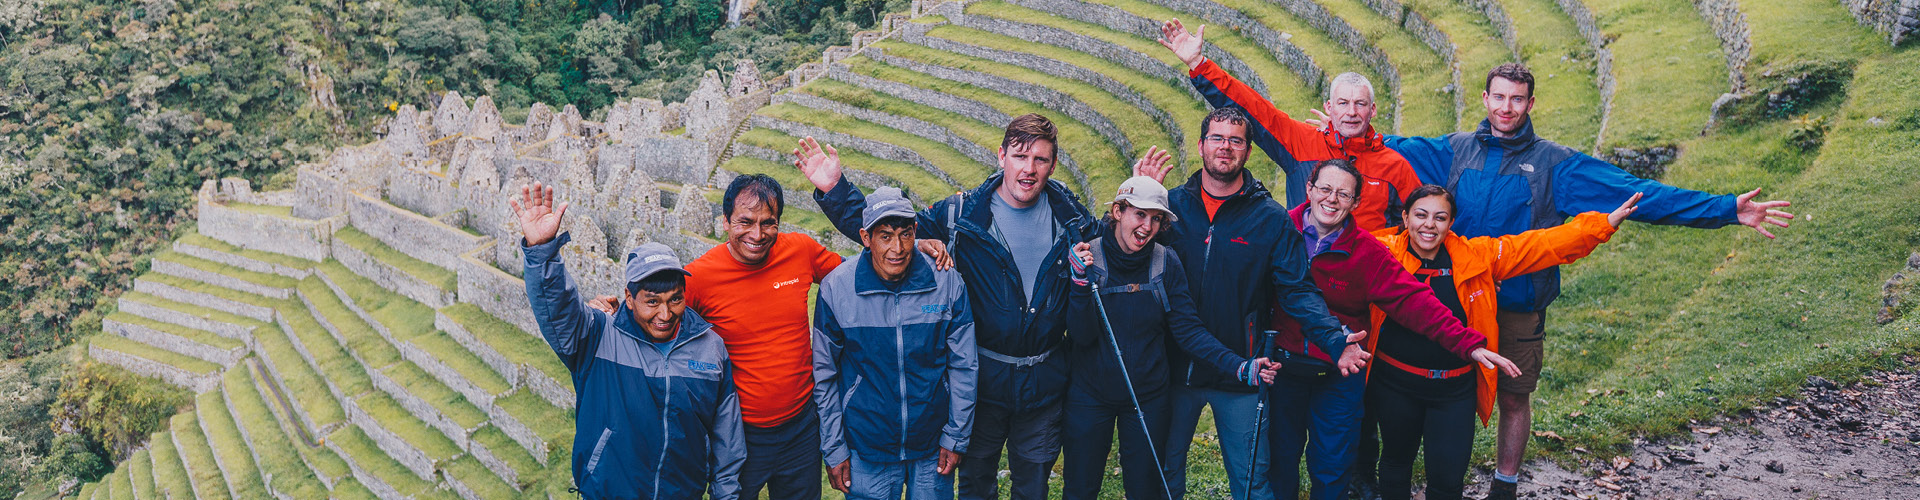 tourhub | Intrepid Travel | Inca Trail Express | GGTA